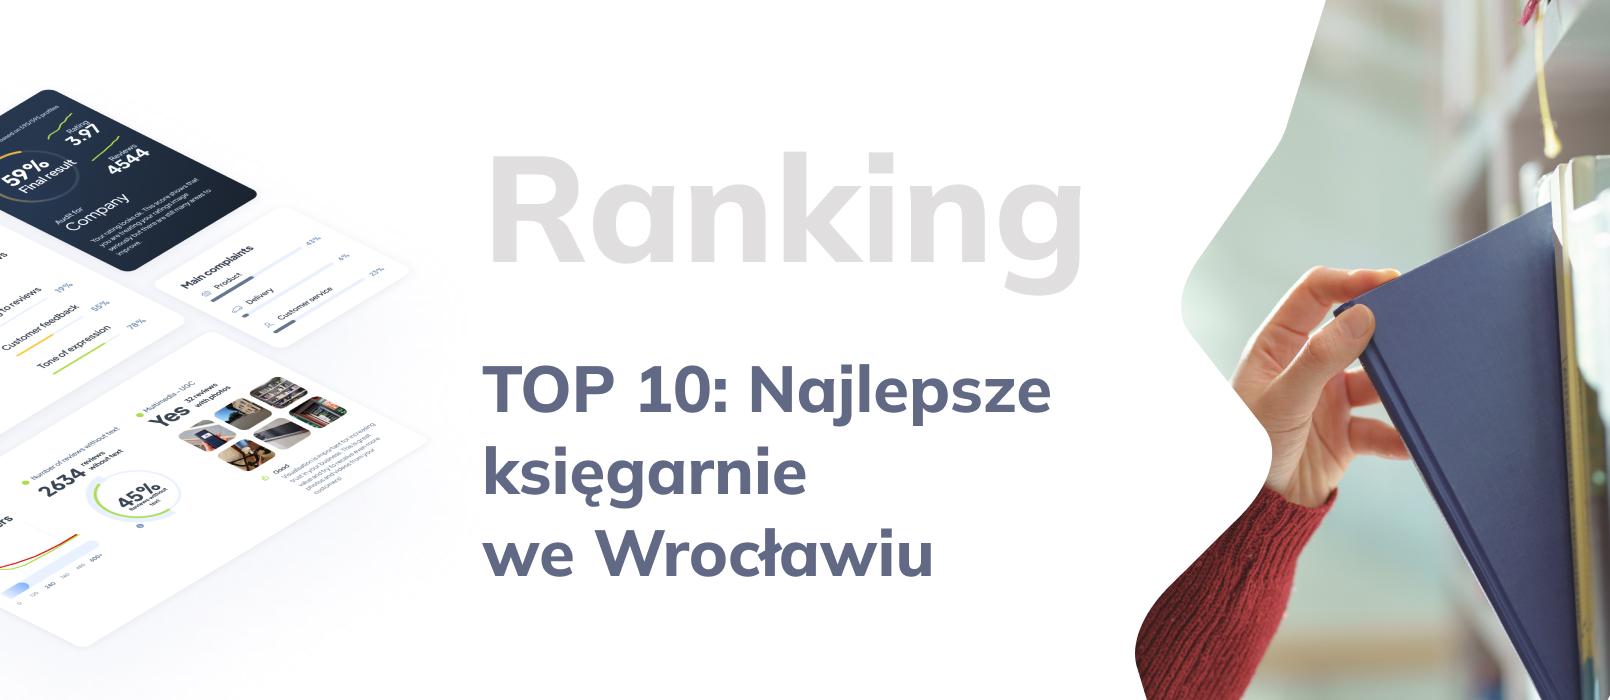 TOP 10: Najlepsze księgarnie we Wrocławiu według opinii klientów